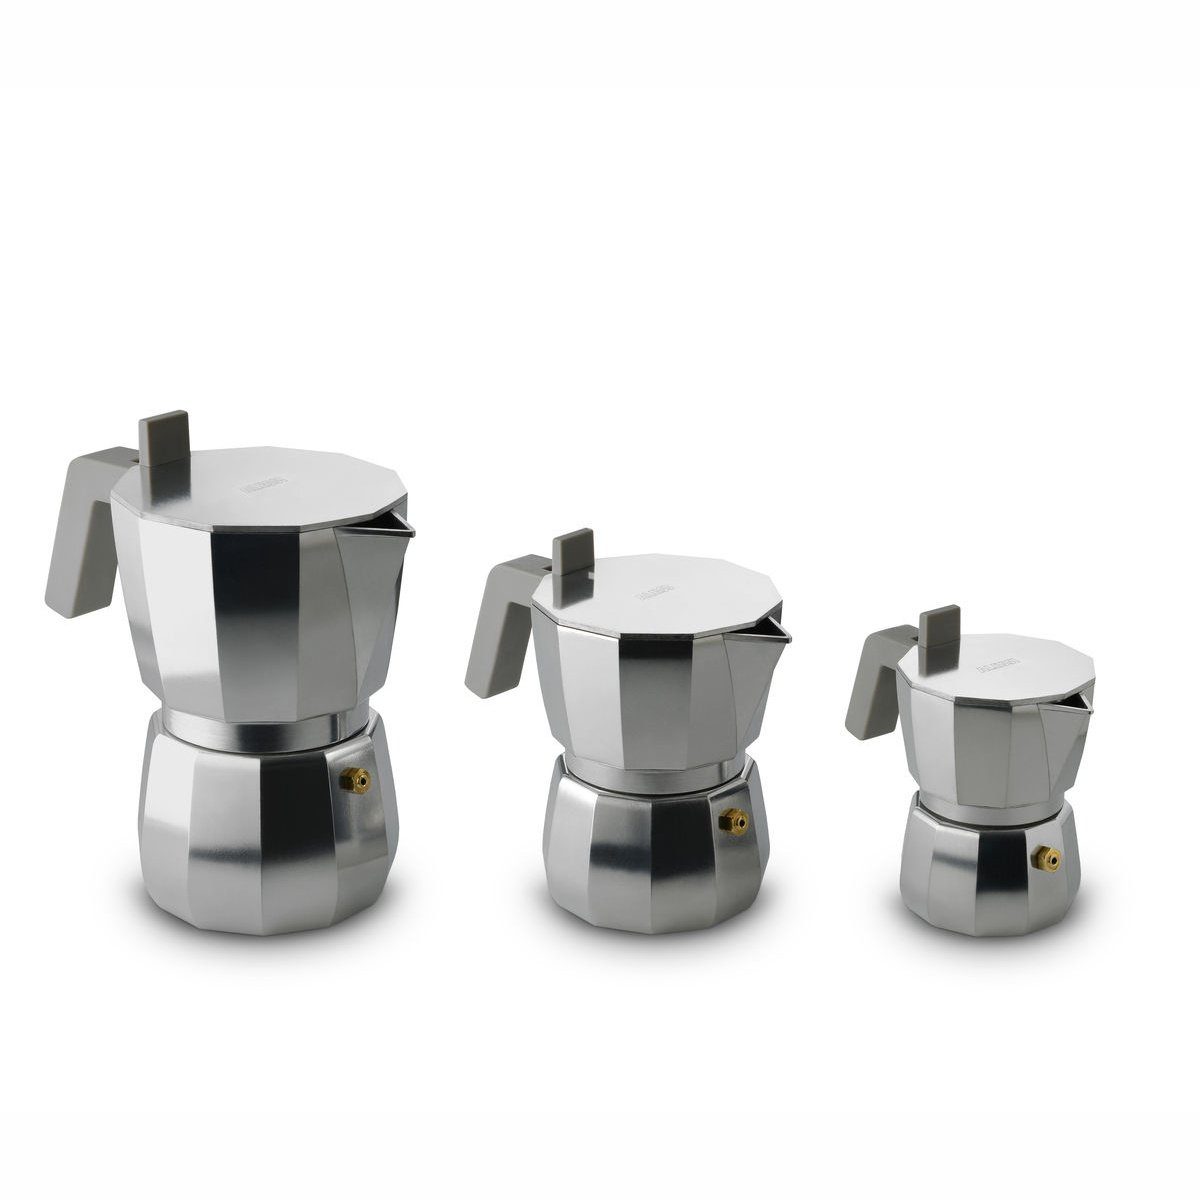 MOKA für Induktion Nicht geeignet 0.07l 1, modern Alessi Espressokocher Espressokocher Kaffeekanne,